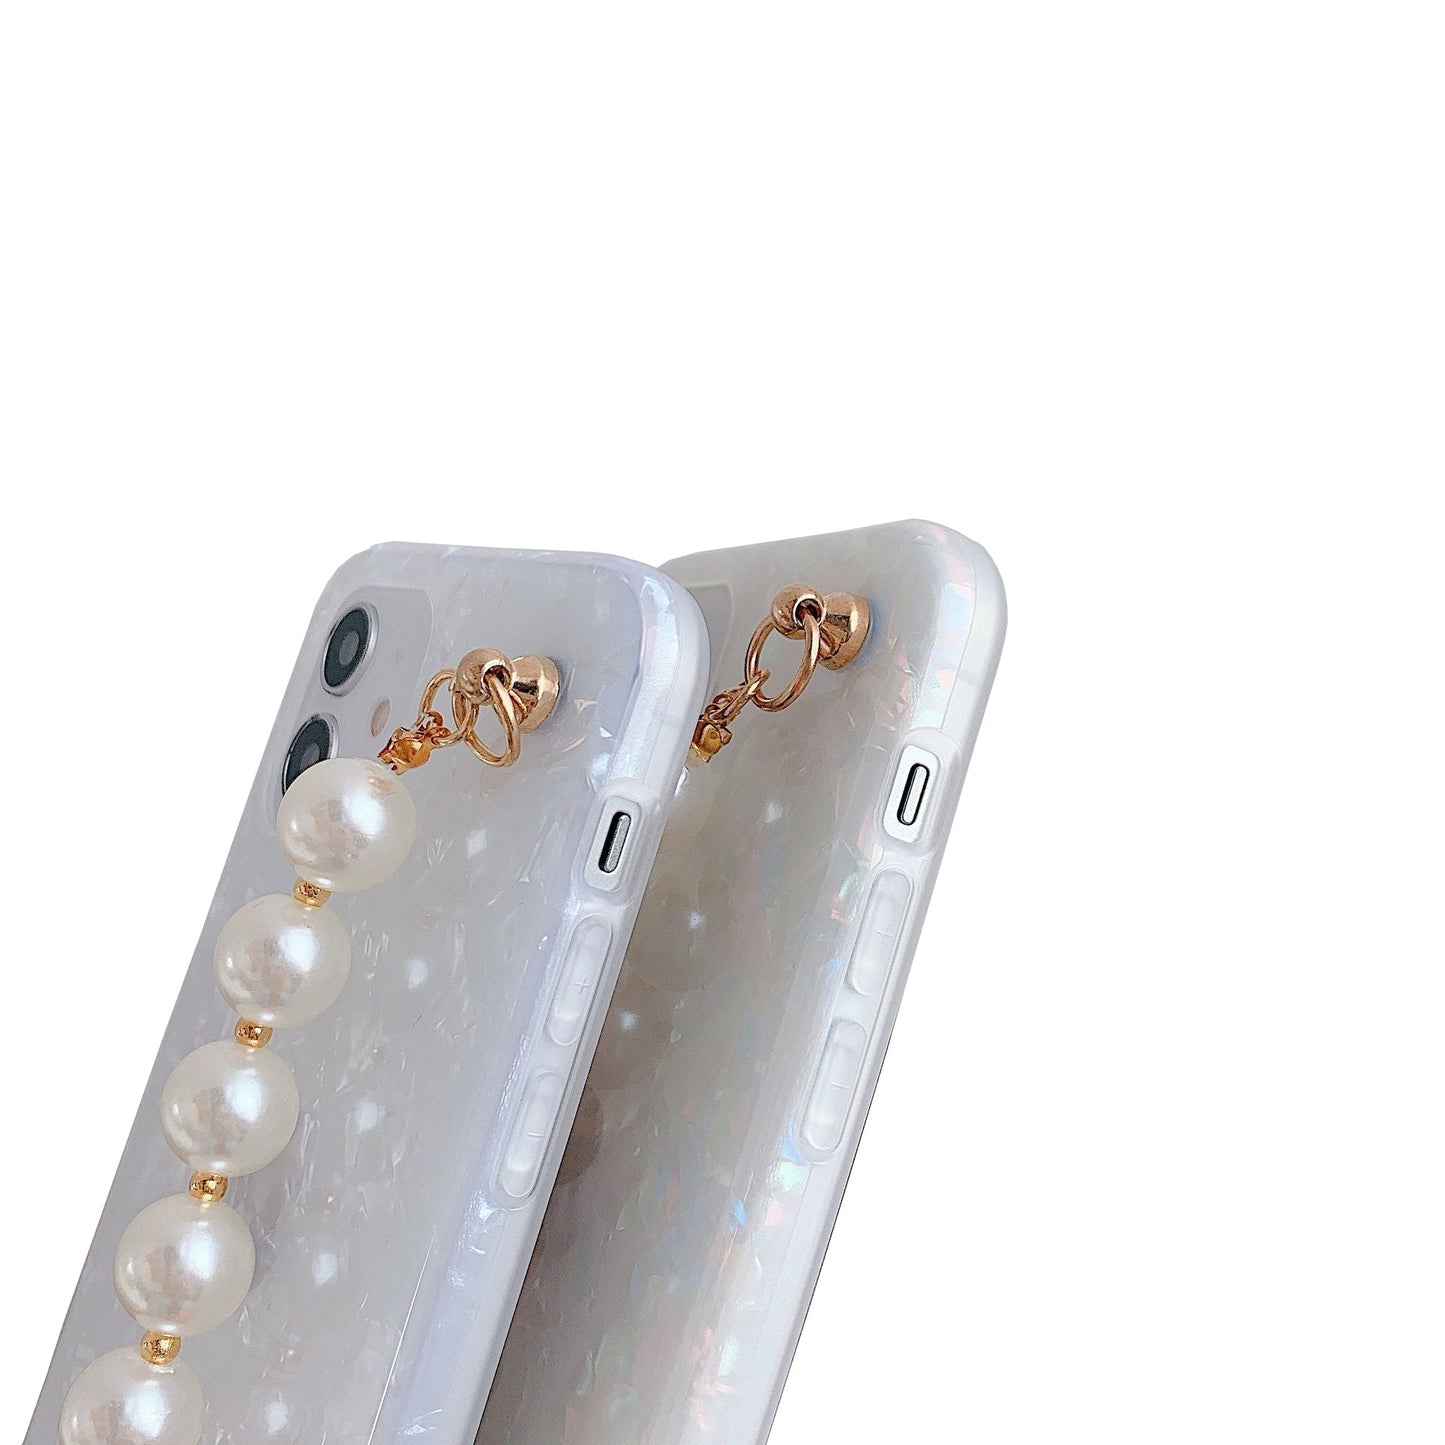 Premium iPhone 13 Pro Max Case : White Pearl Holder